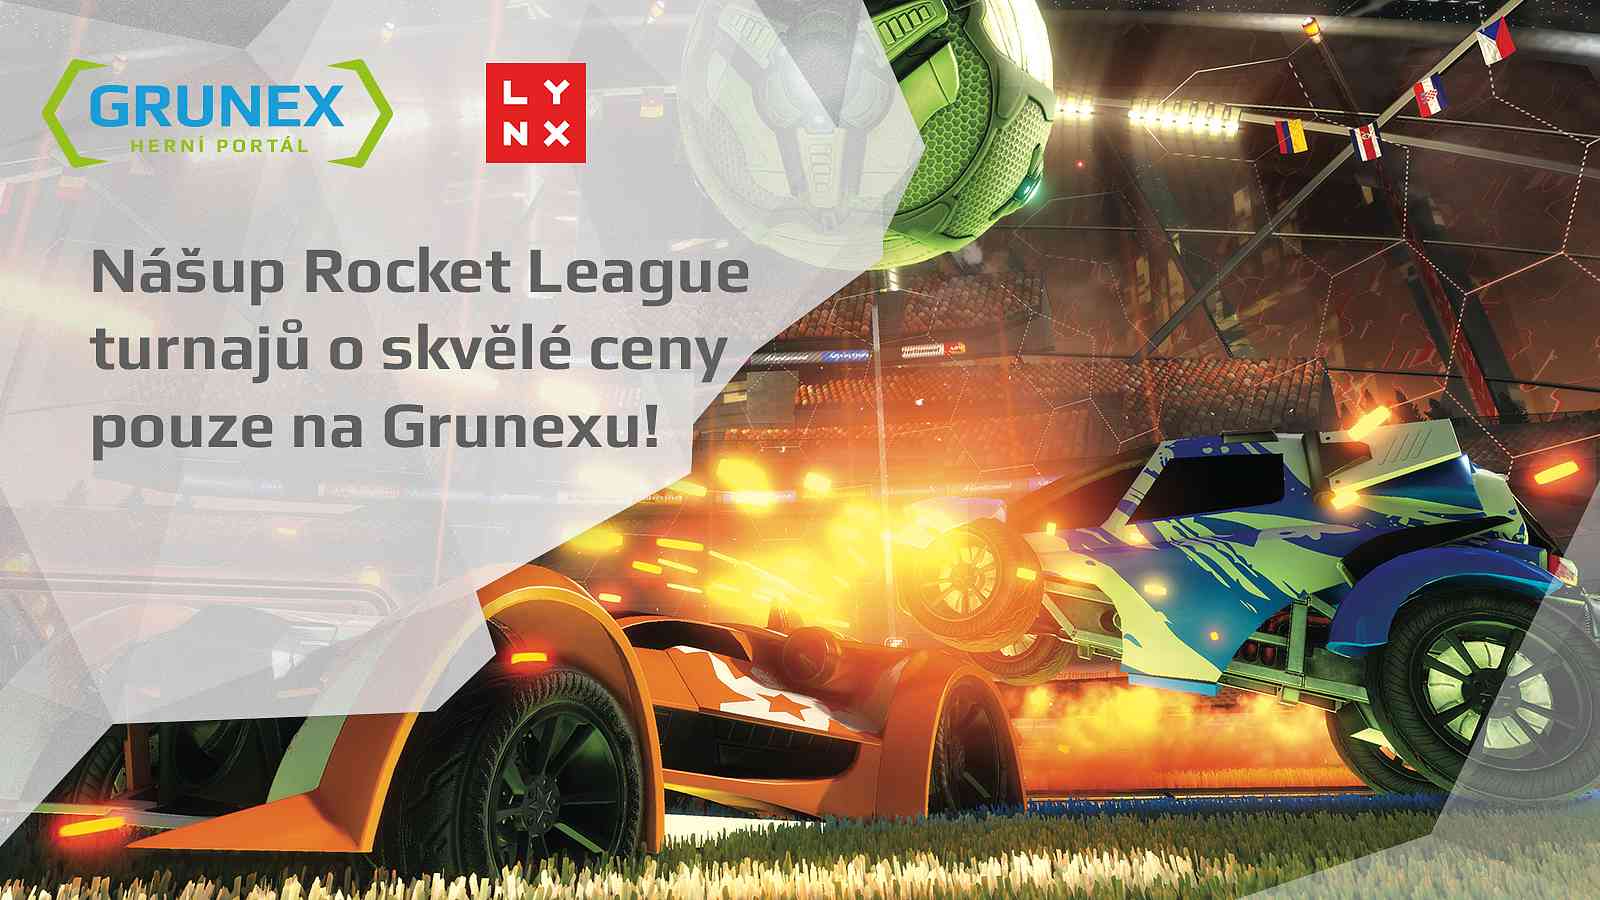 Nášup Rocket League turnajů o skvělé ceny pouze na Grunexu